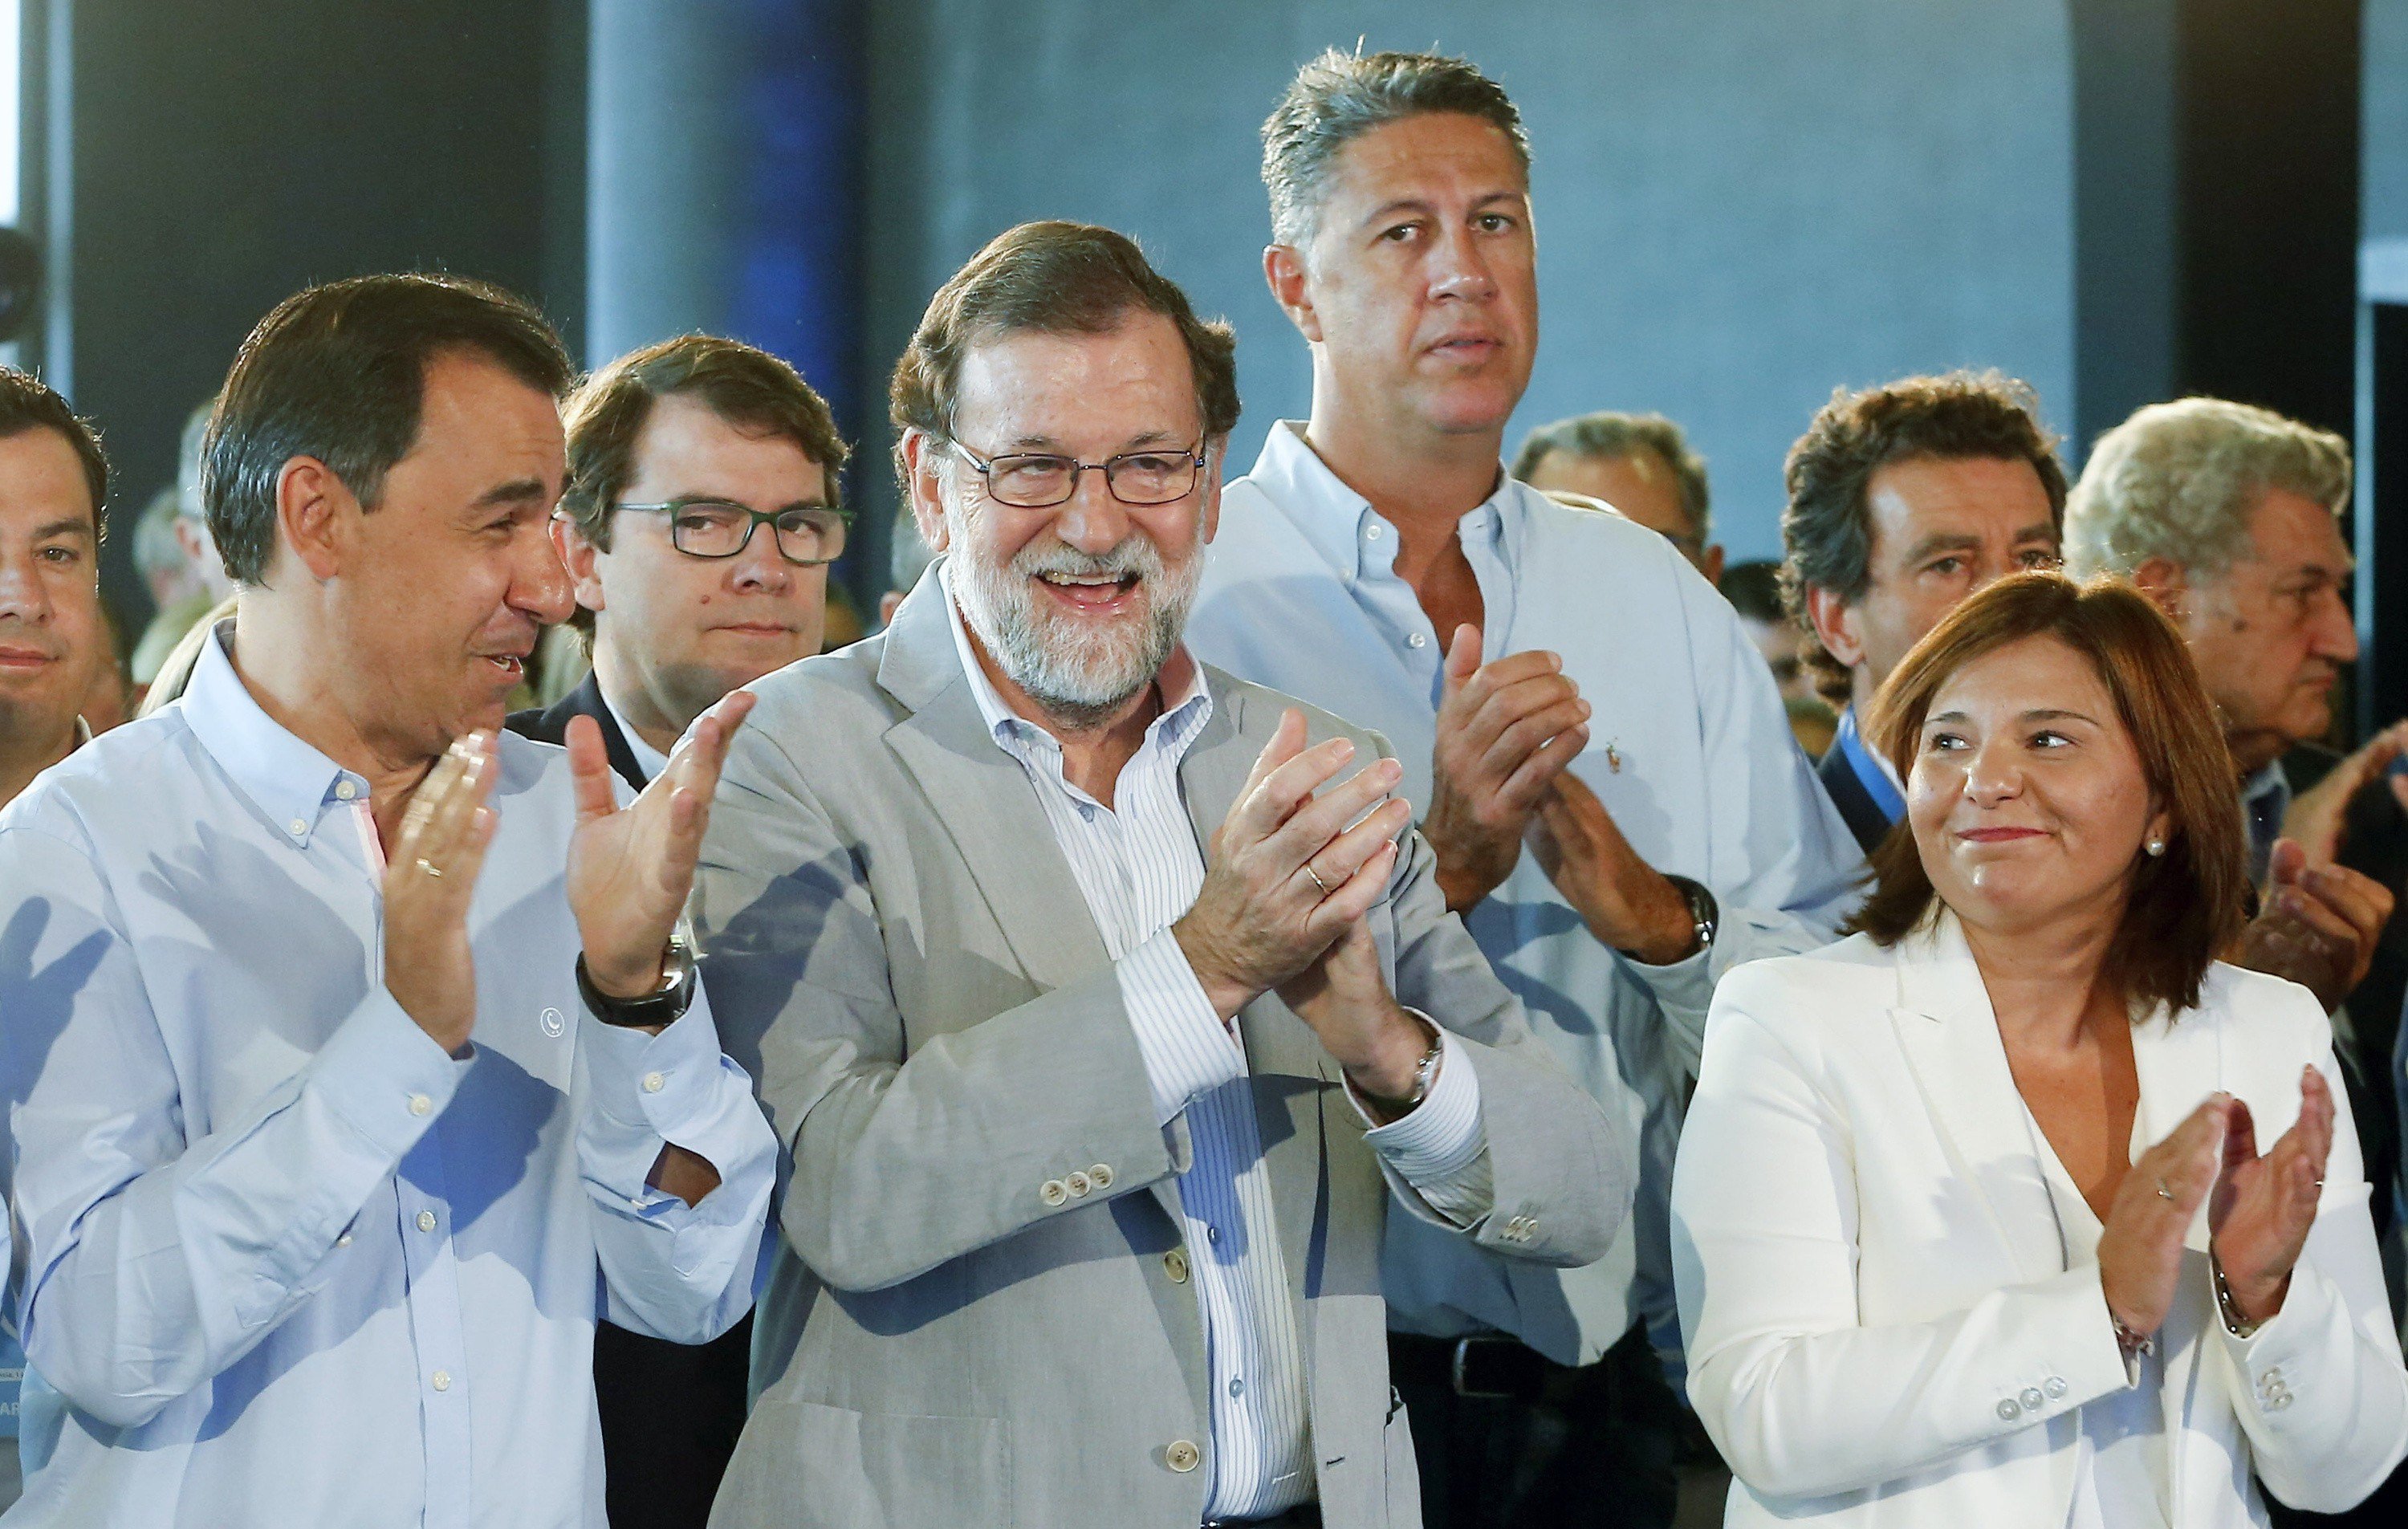 Rajoy: "El Govern està segrestat per radicals"